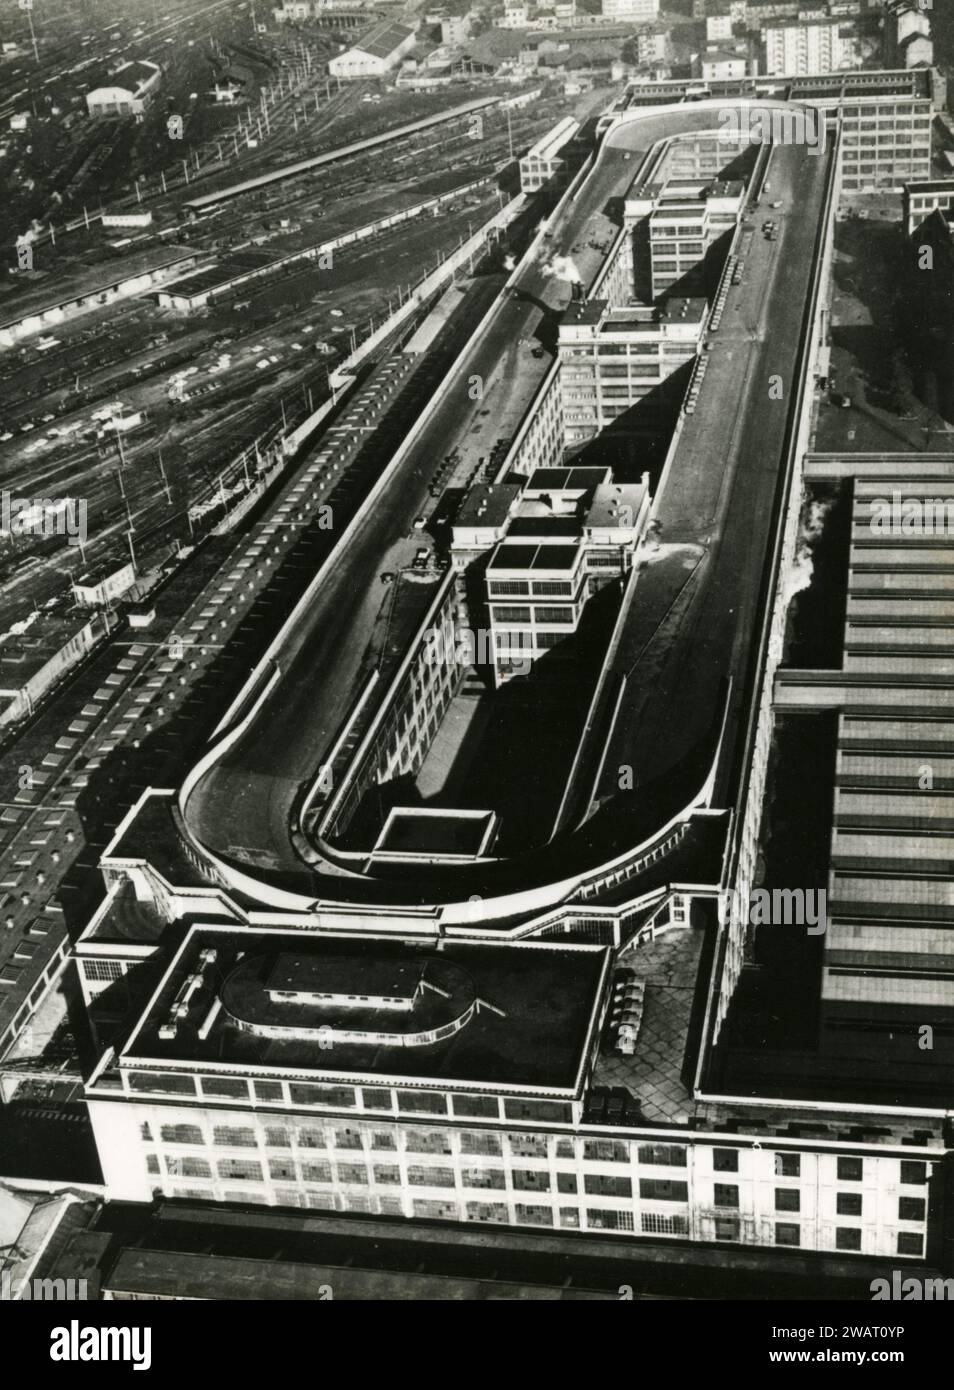 Vue de la piste de course sur le toit du palais FIAT Lingotto, Turin, Italie des années 1930 Banque D'Images